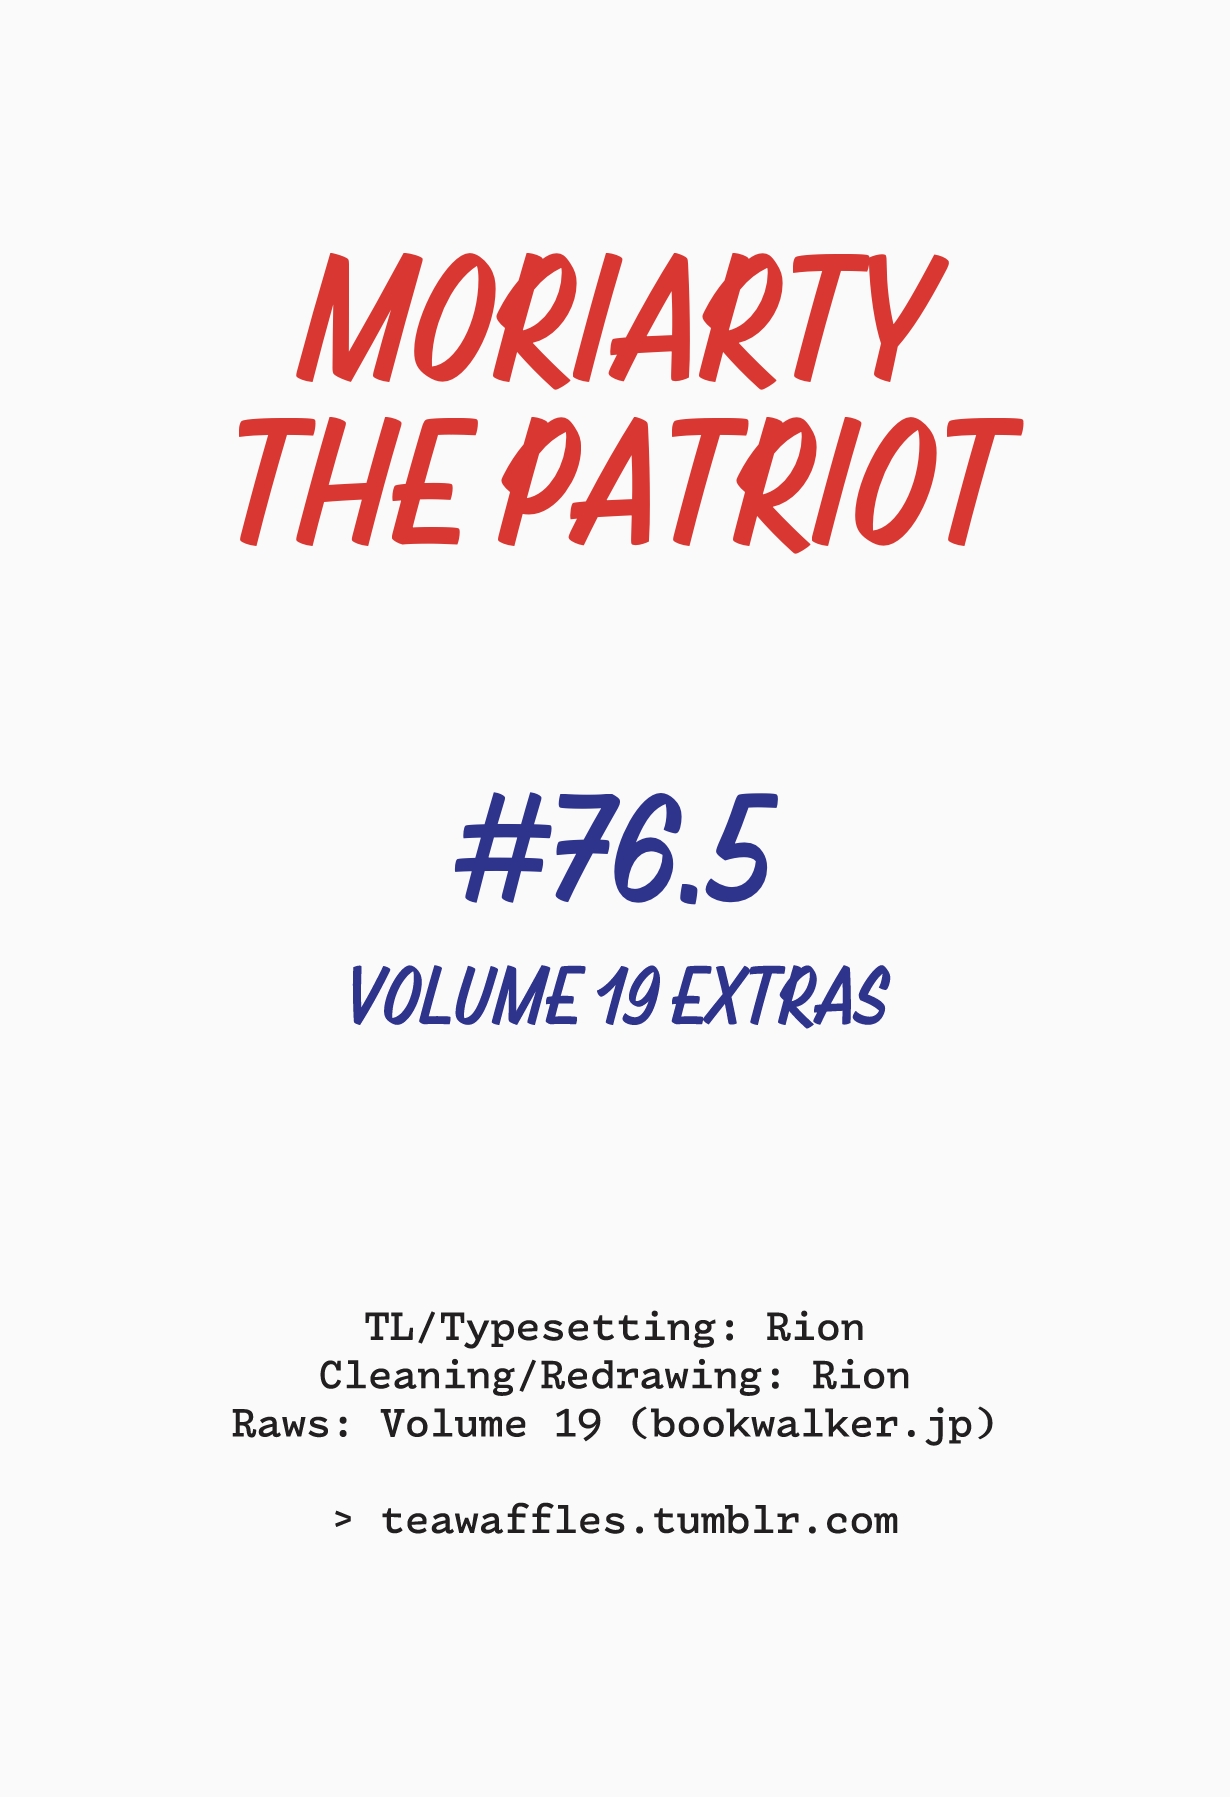 Yuukoku no Moriarty 76.5